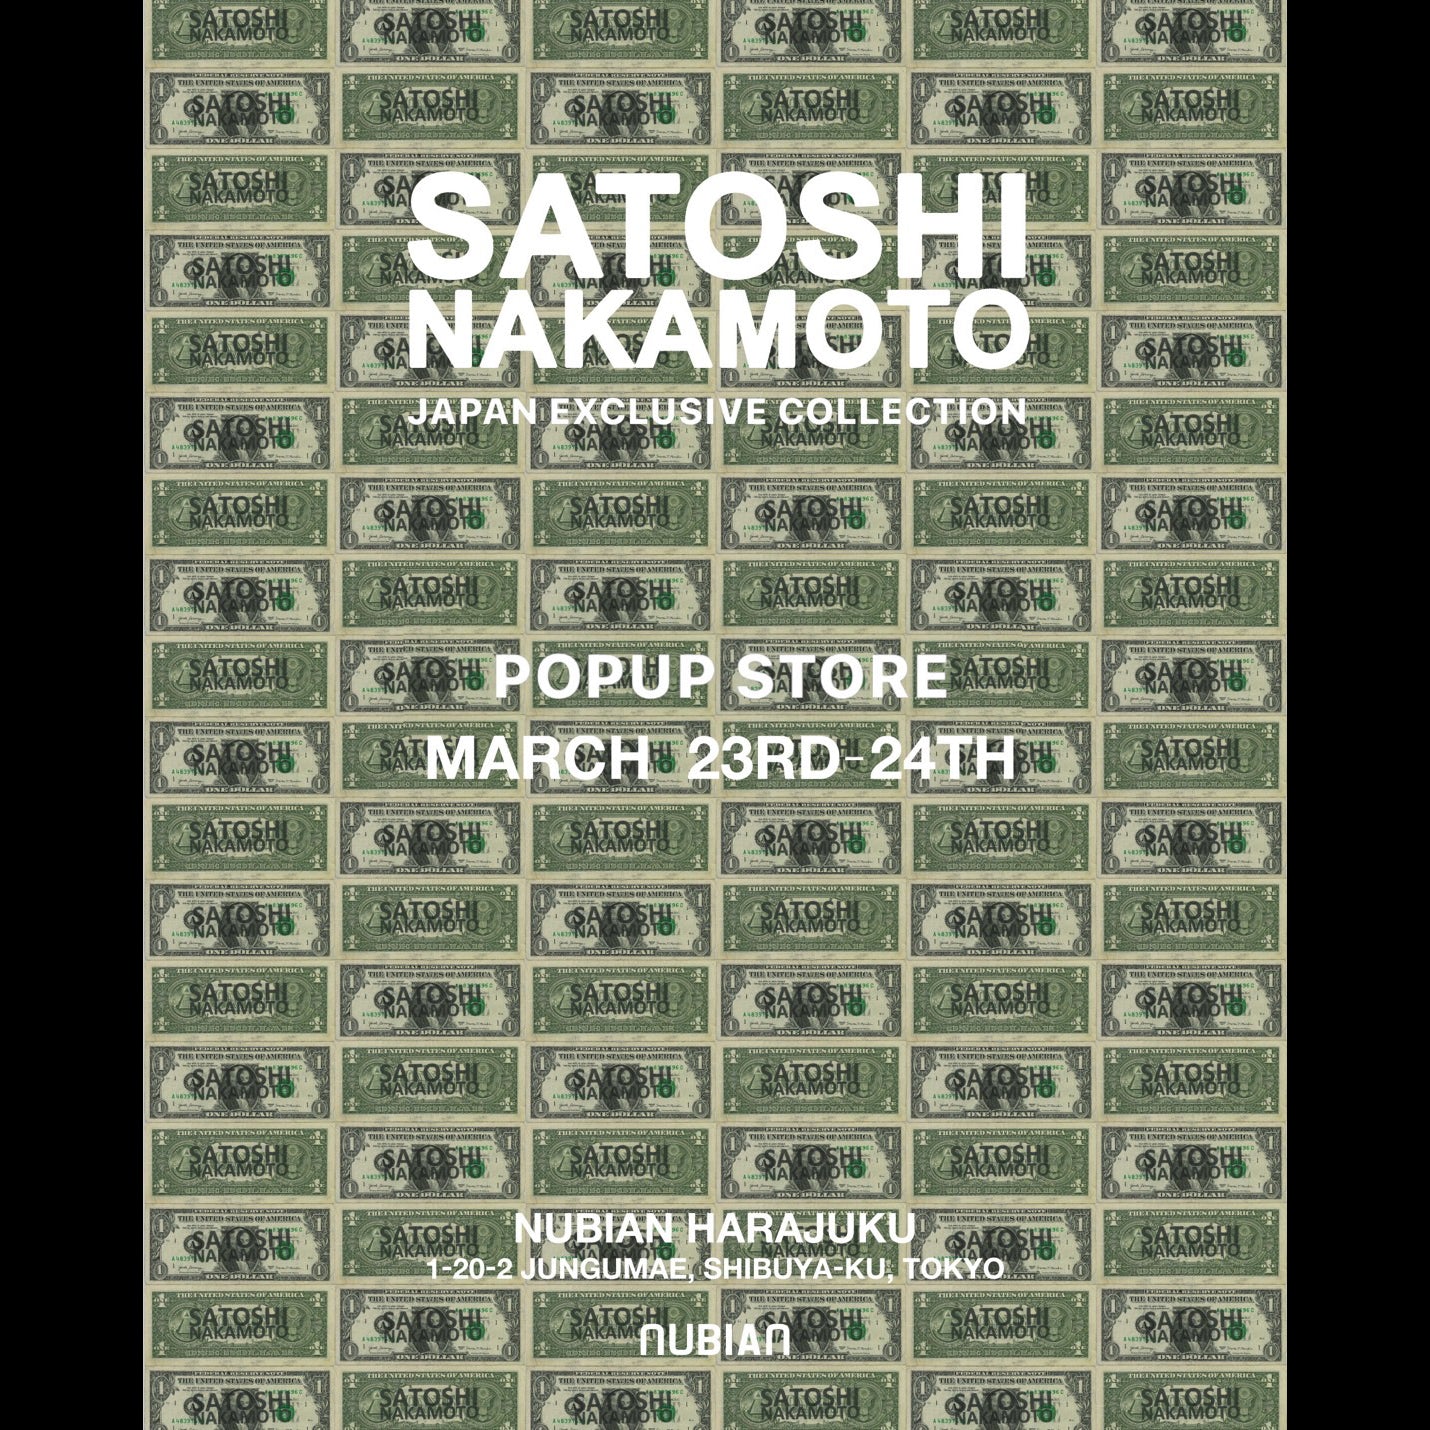 3/23(土)-24(日)開催<br>SATOSHI NAKAMOTO<br>JAPAN EXCLUSIVE COLLECTION<br>POP UP STORE